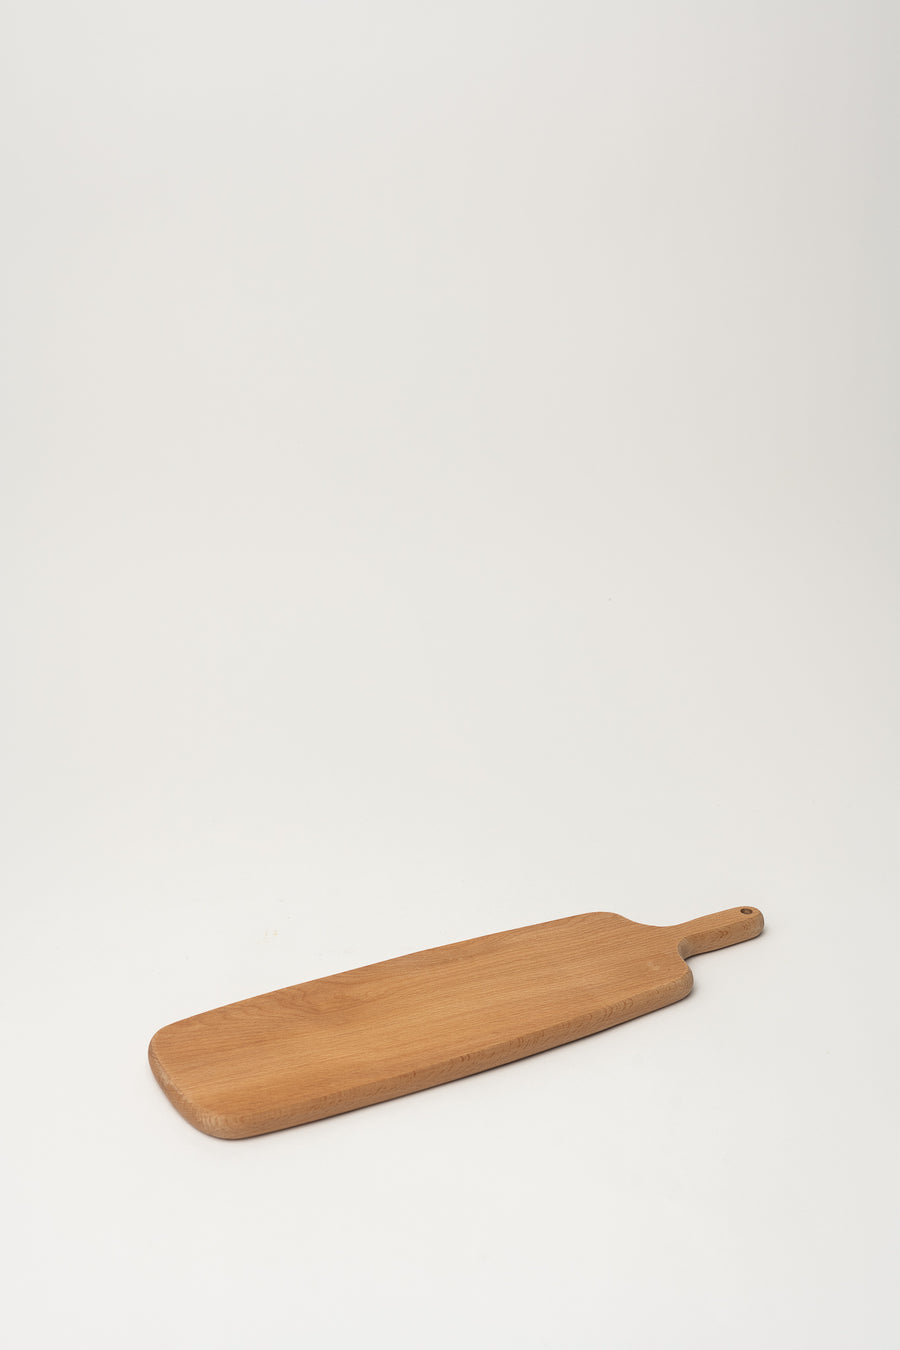 Wooden Serving Platter - Rectangle Long